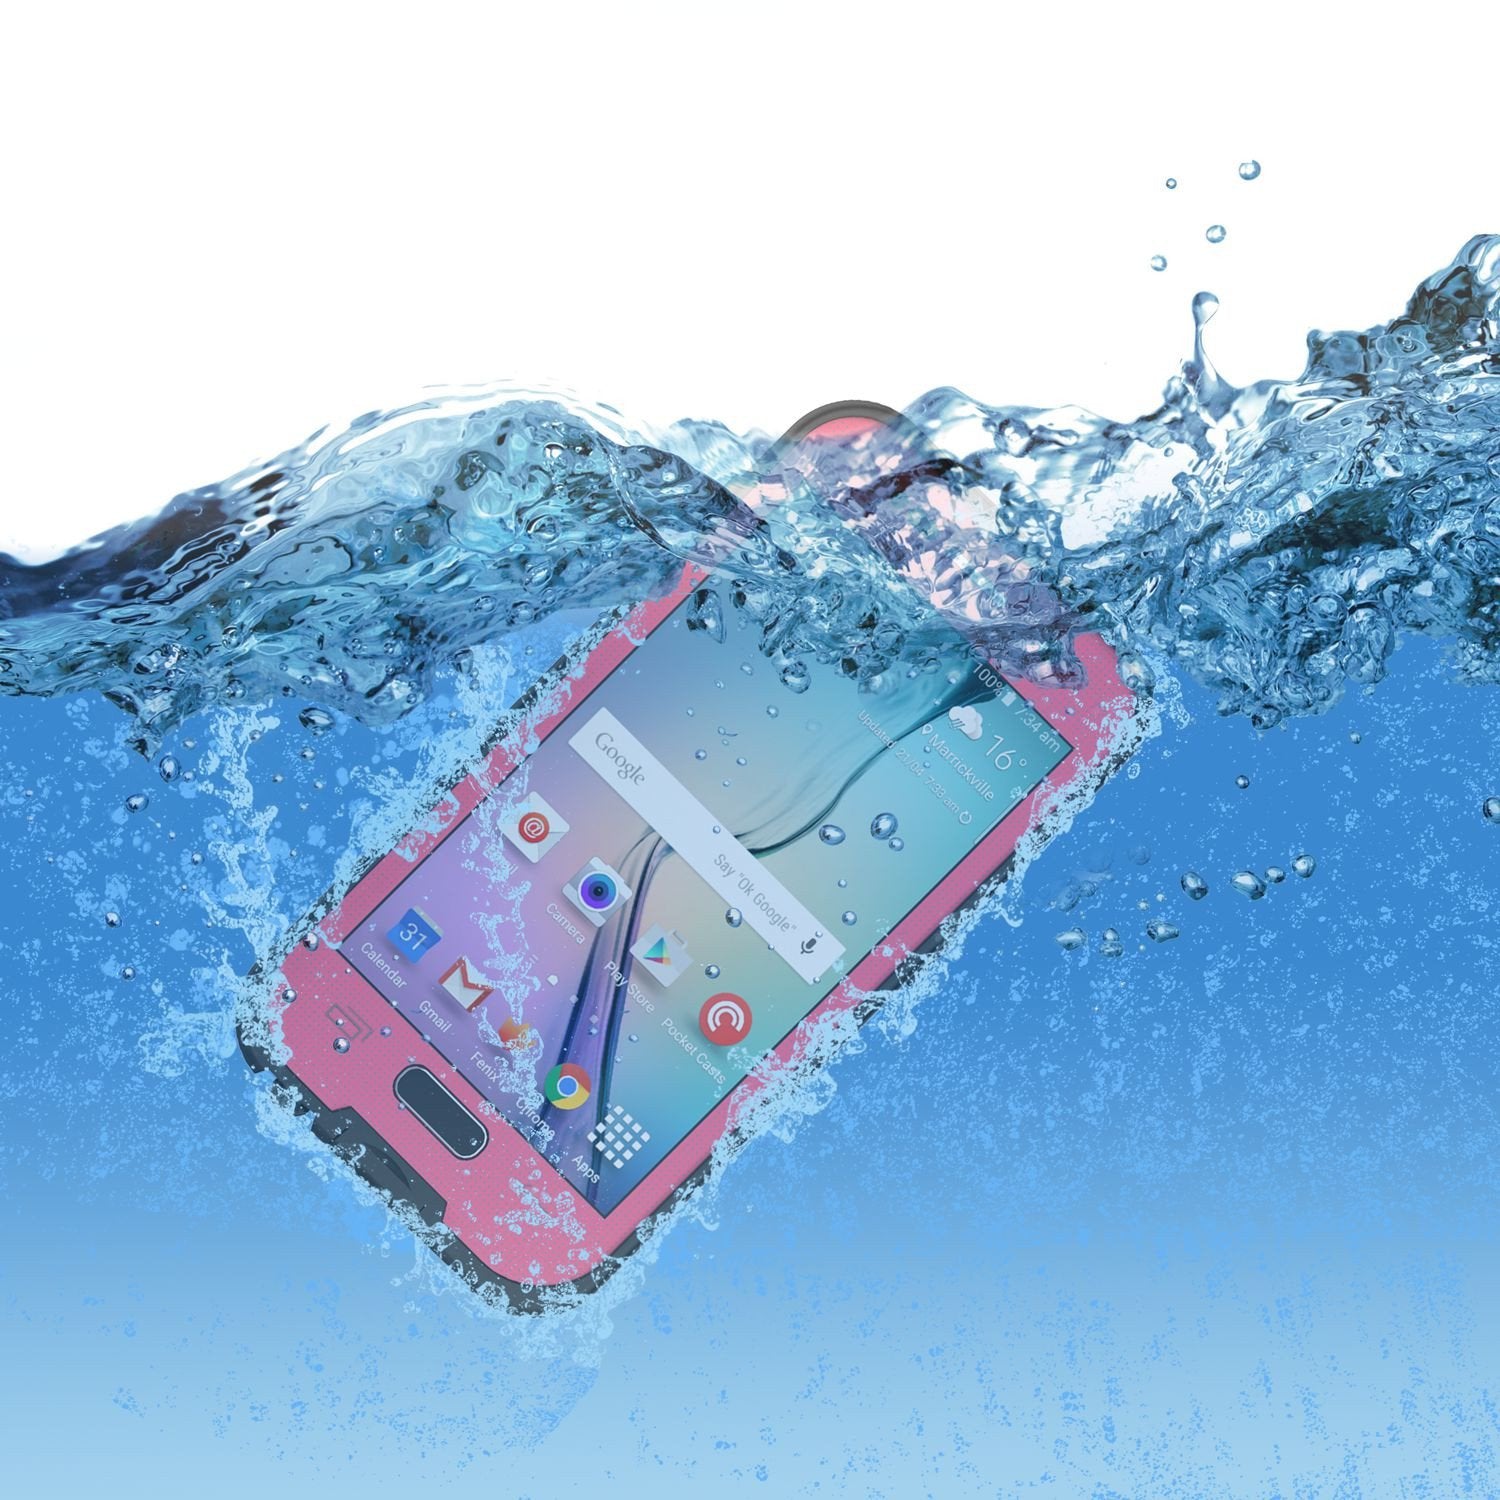 Galaxy S6 Waterproof Case, Punkcase SpikeStar Pink Water/Shock/Dirt/Snow Proof | Lifetime Warranty - PunkCase NZ